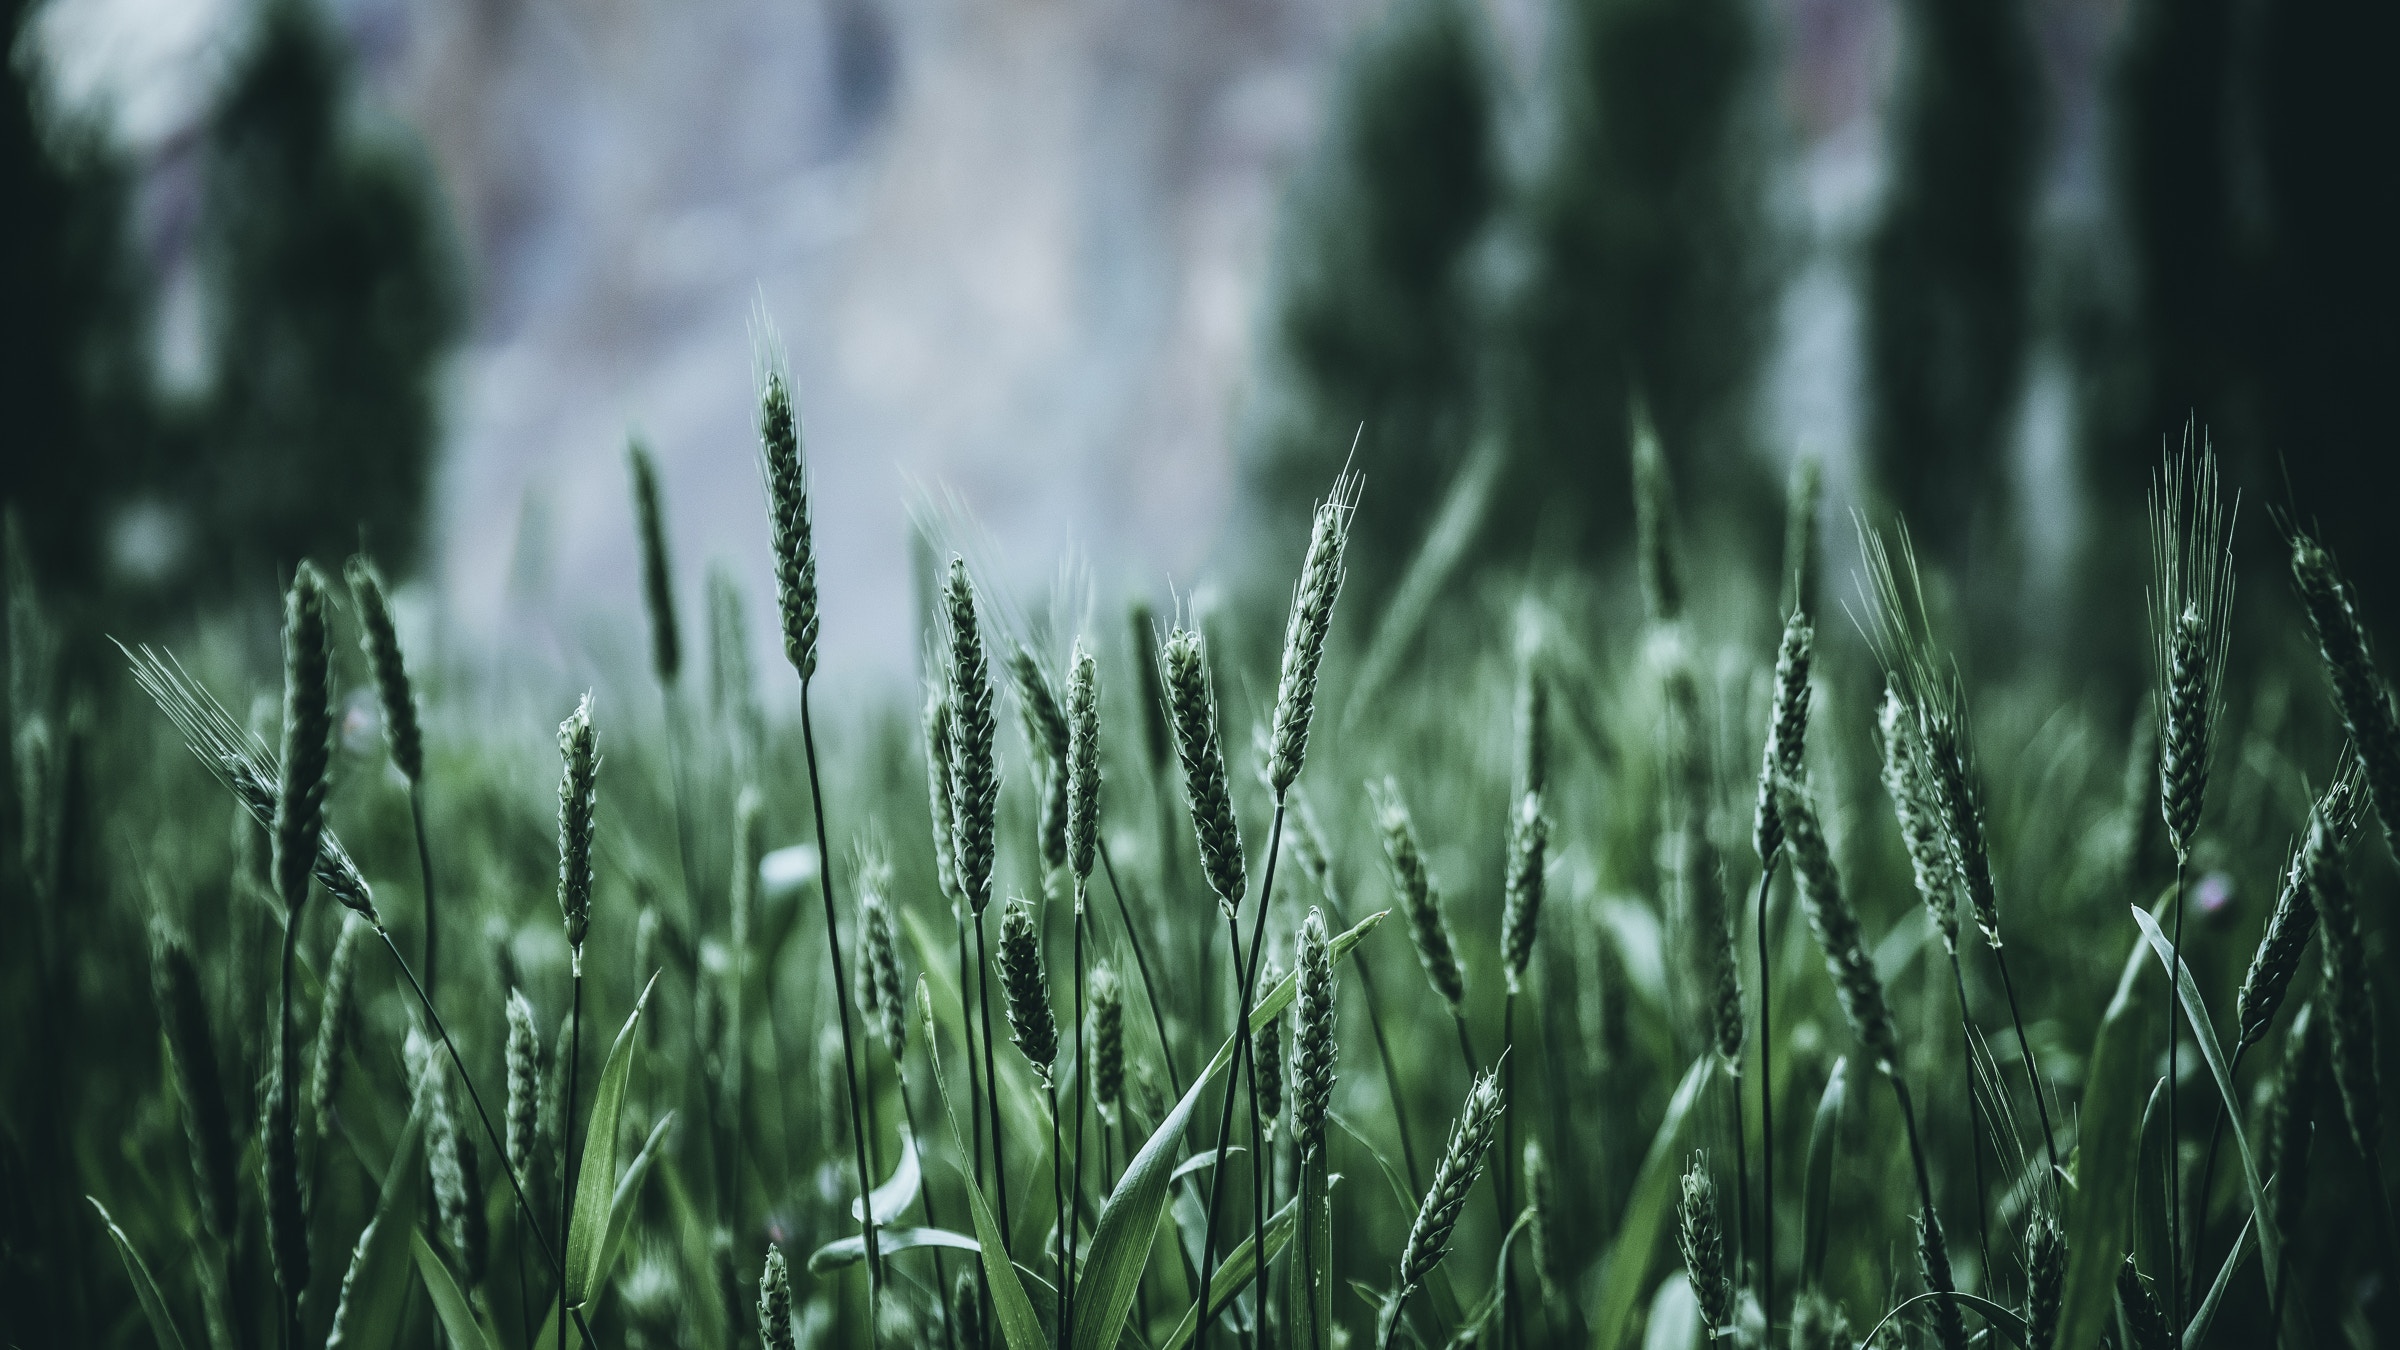 Download wallpaper 2400x1350 grass, ears, green, blur hd background